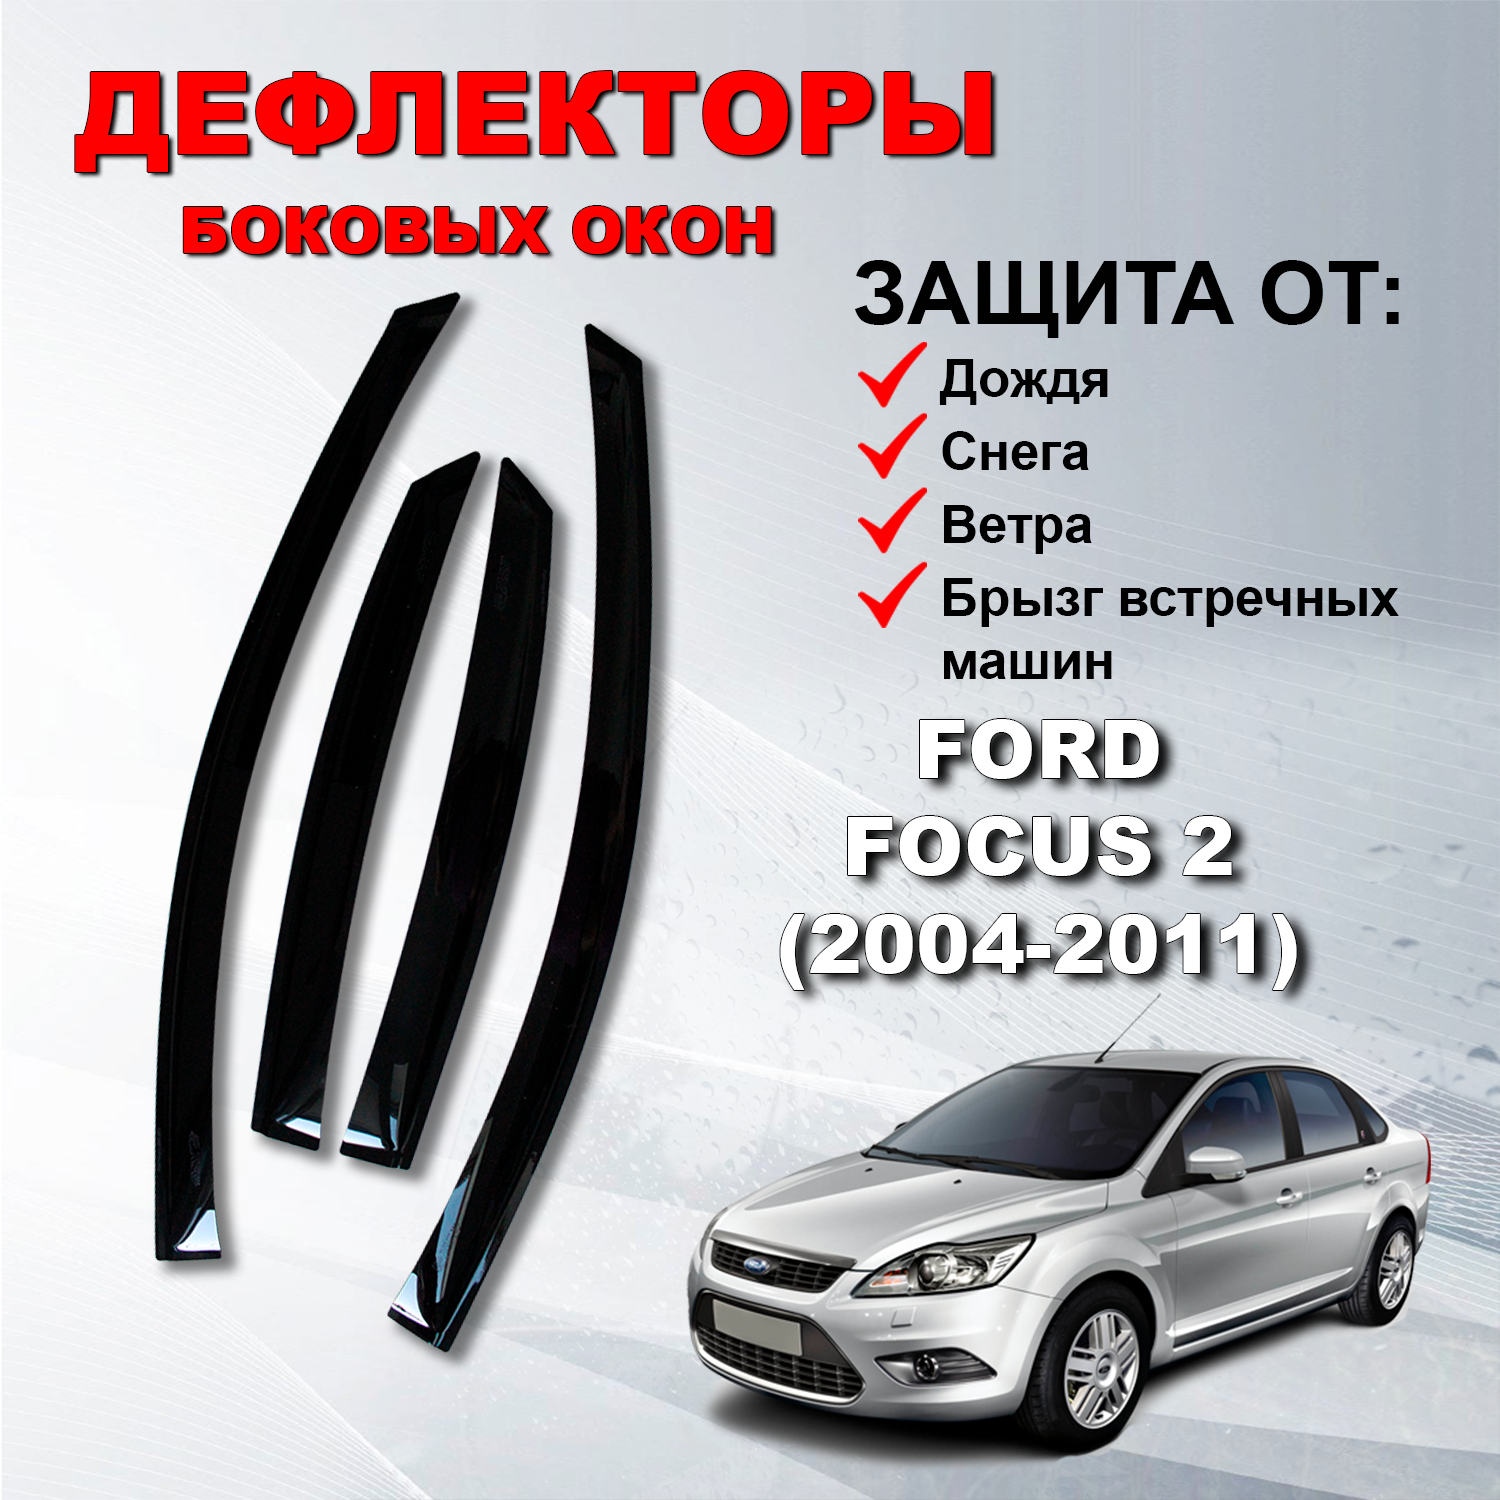 Дефлекторы боковых окон (Ветровики) на Форд Фокус 2 седан хэтчбек / Ford Focus 2 (2004-2011)